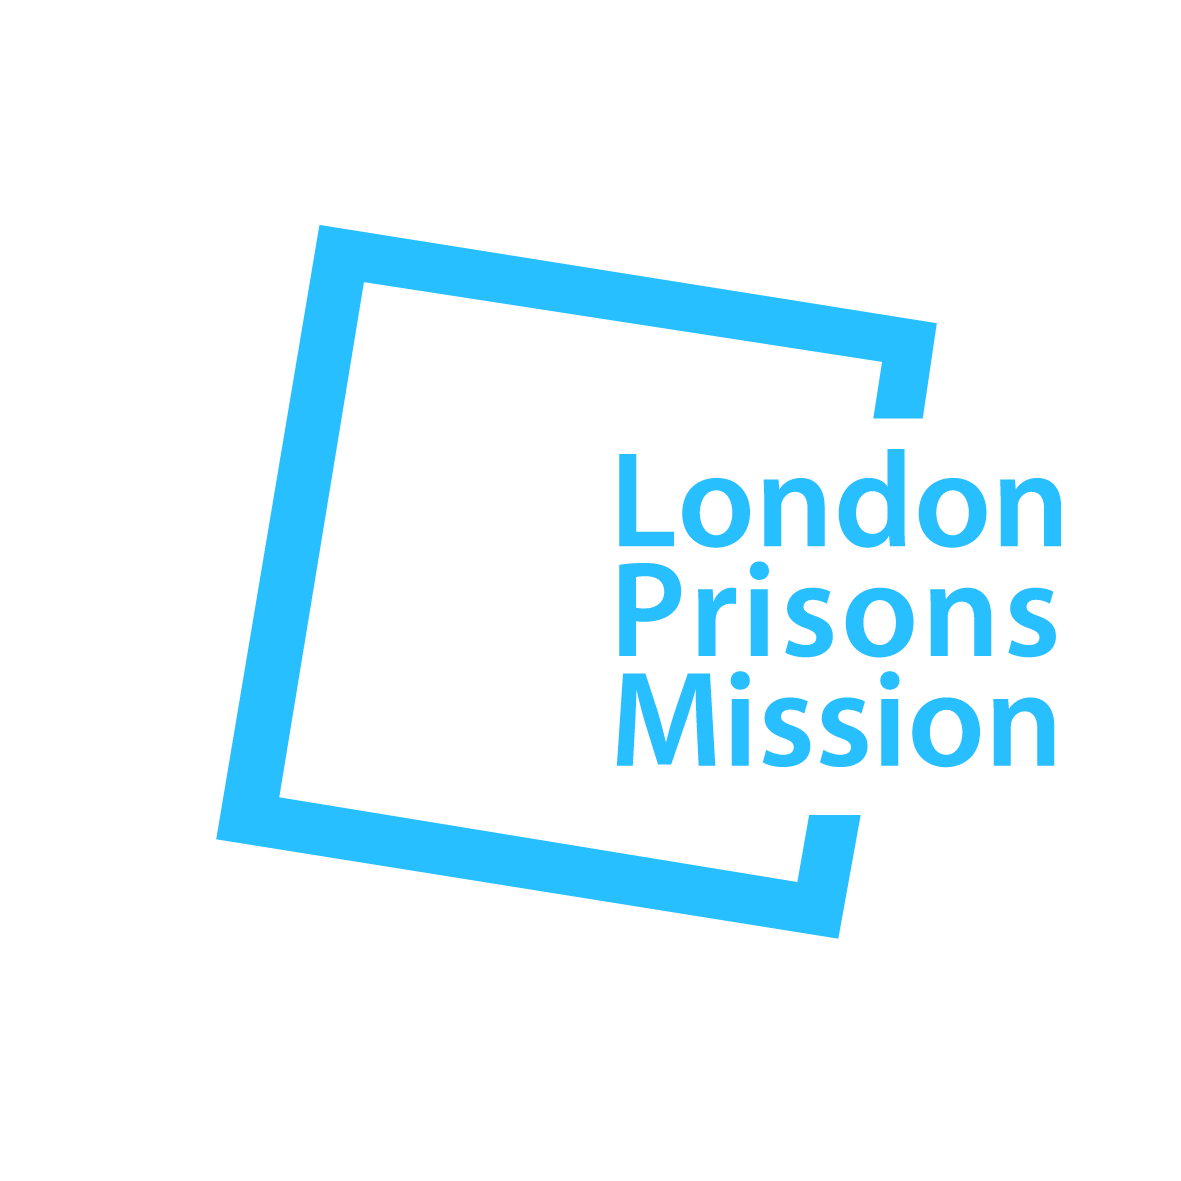 London Prisons Mission